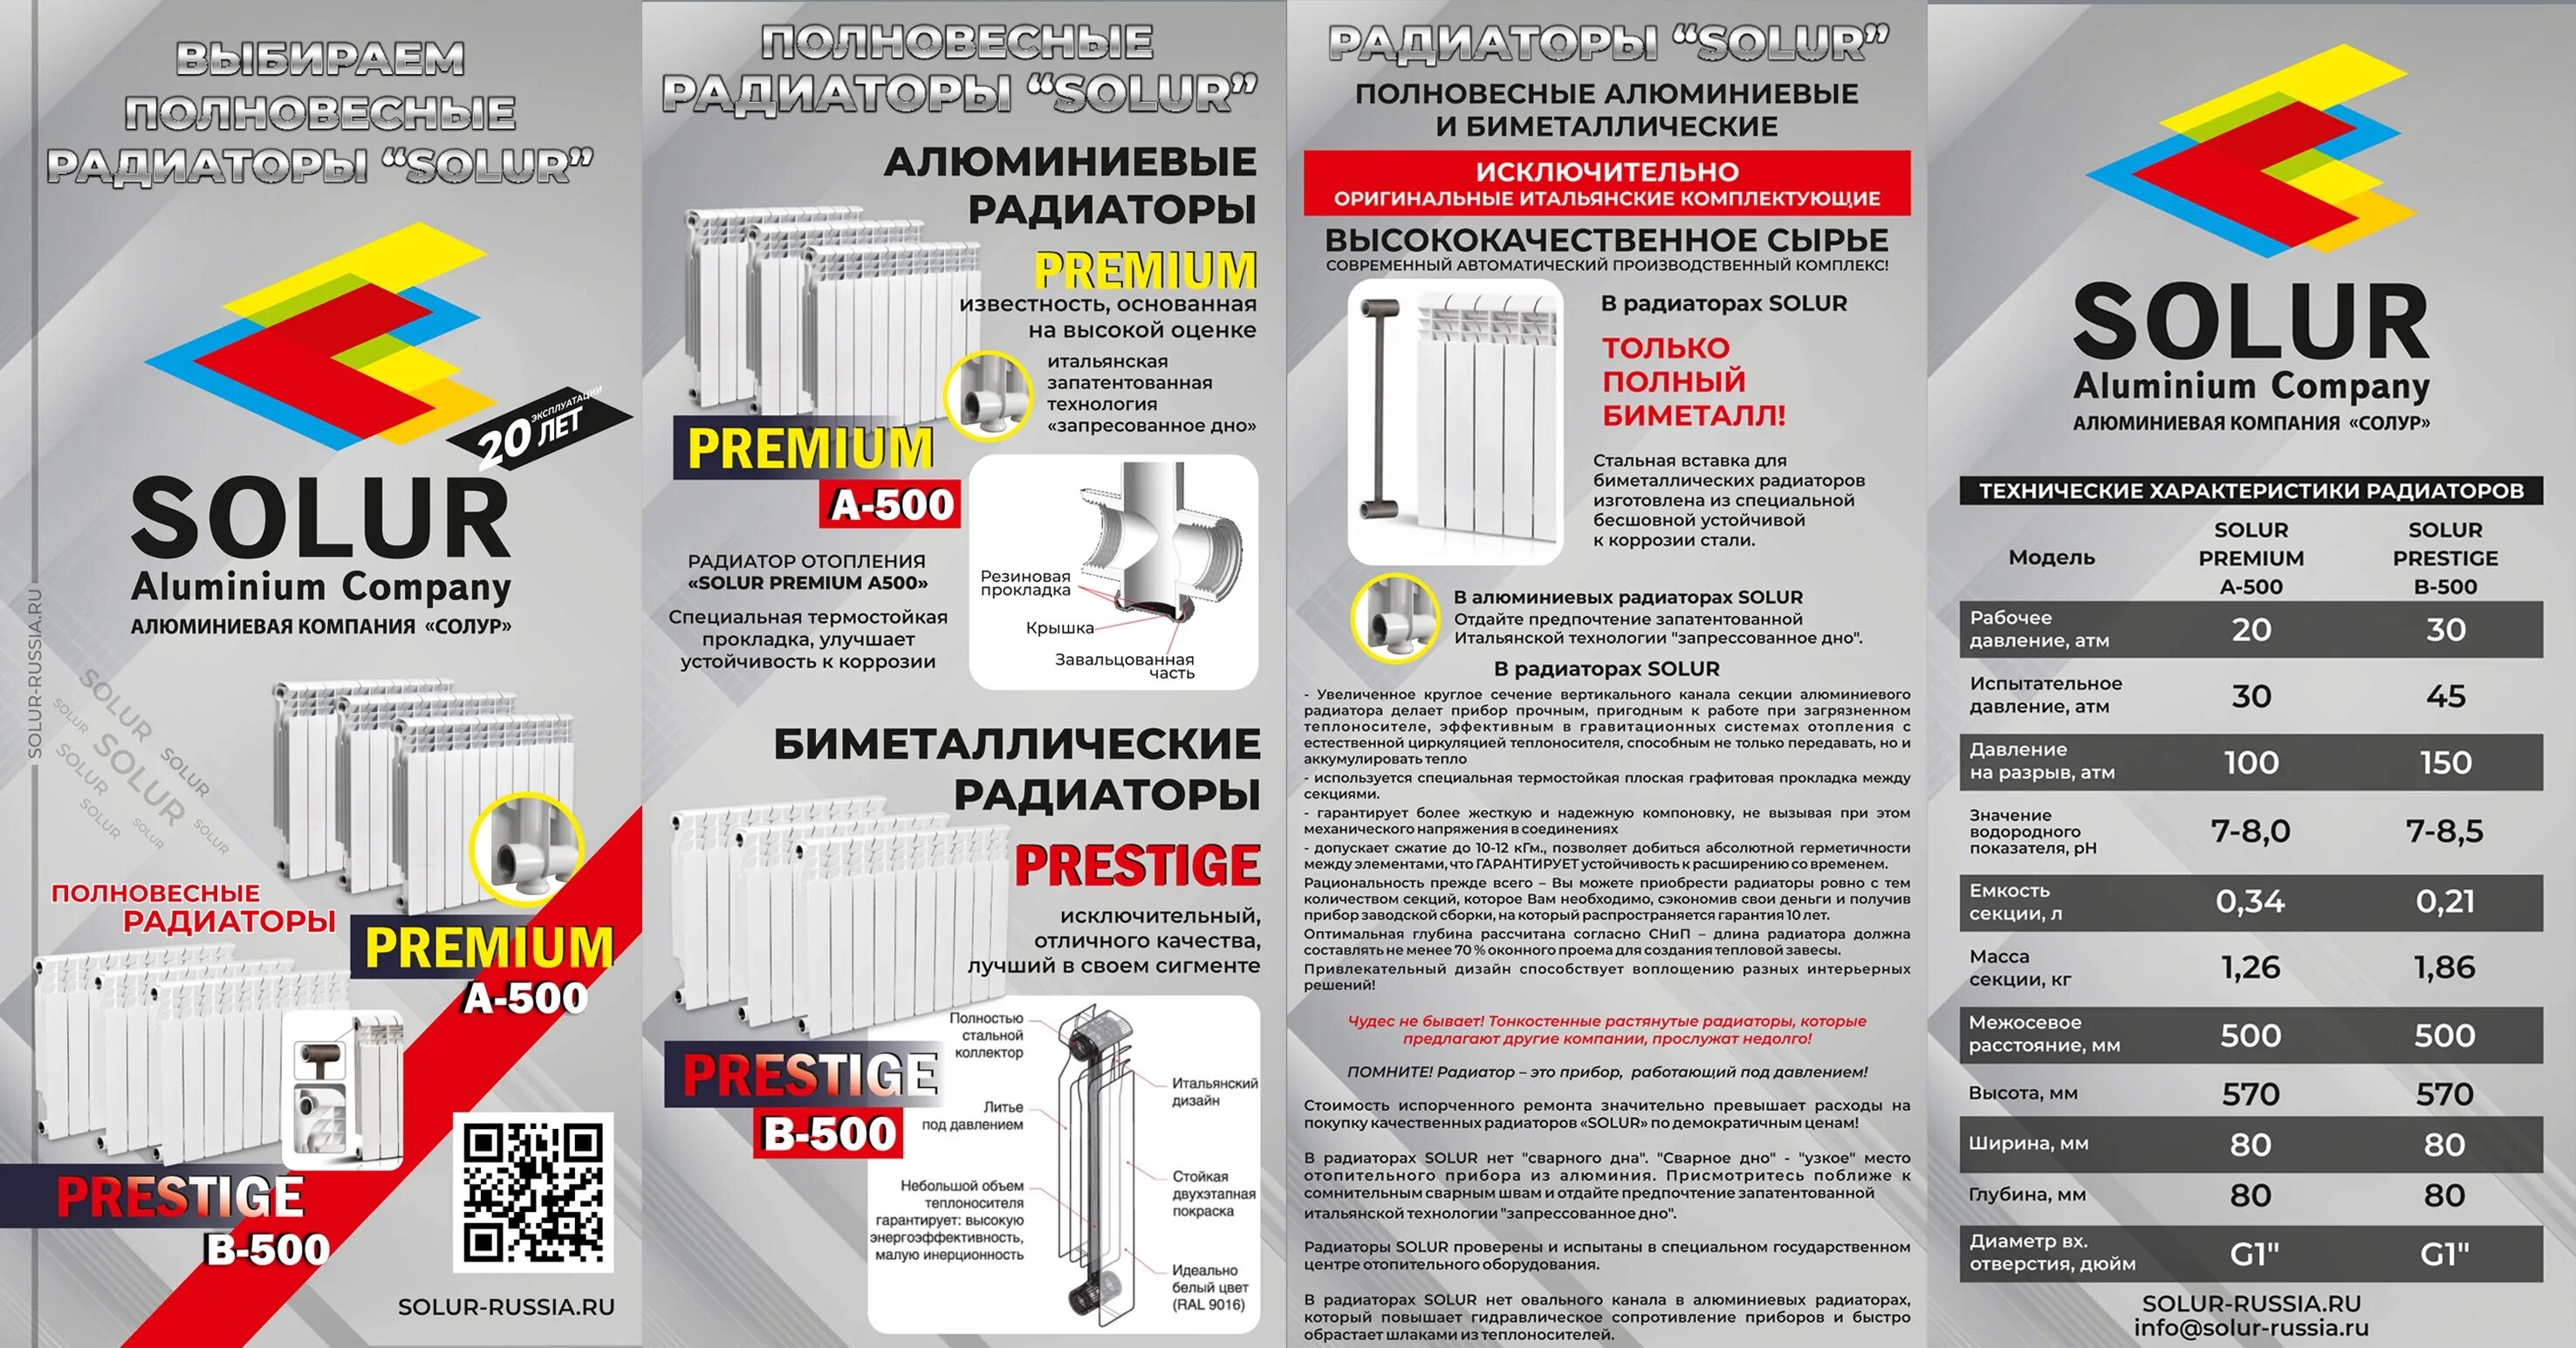 Радиатор биметаллический Solur Prestige b-500/80. Радиаторы Солур. Solur Premium радиатор. Радиаторы отопления фирмы производители.